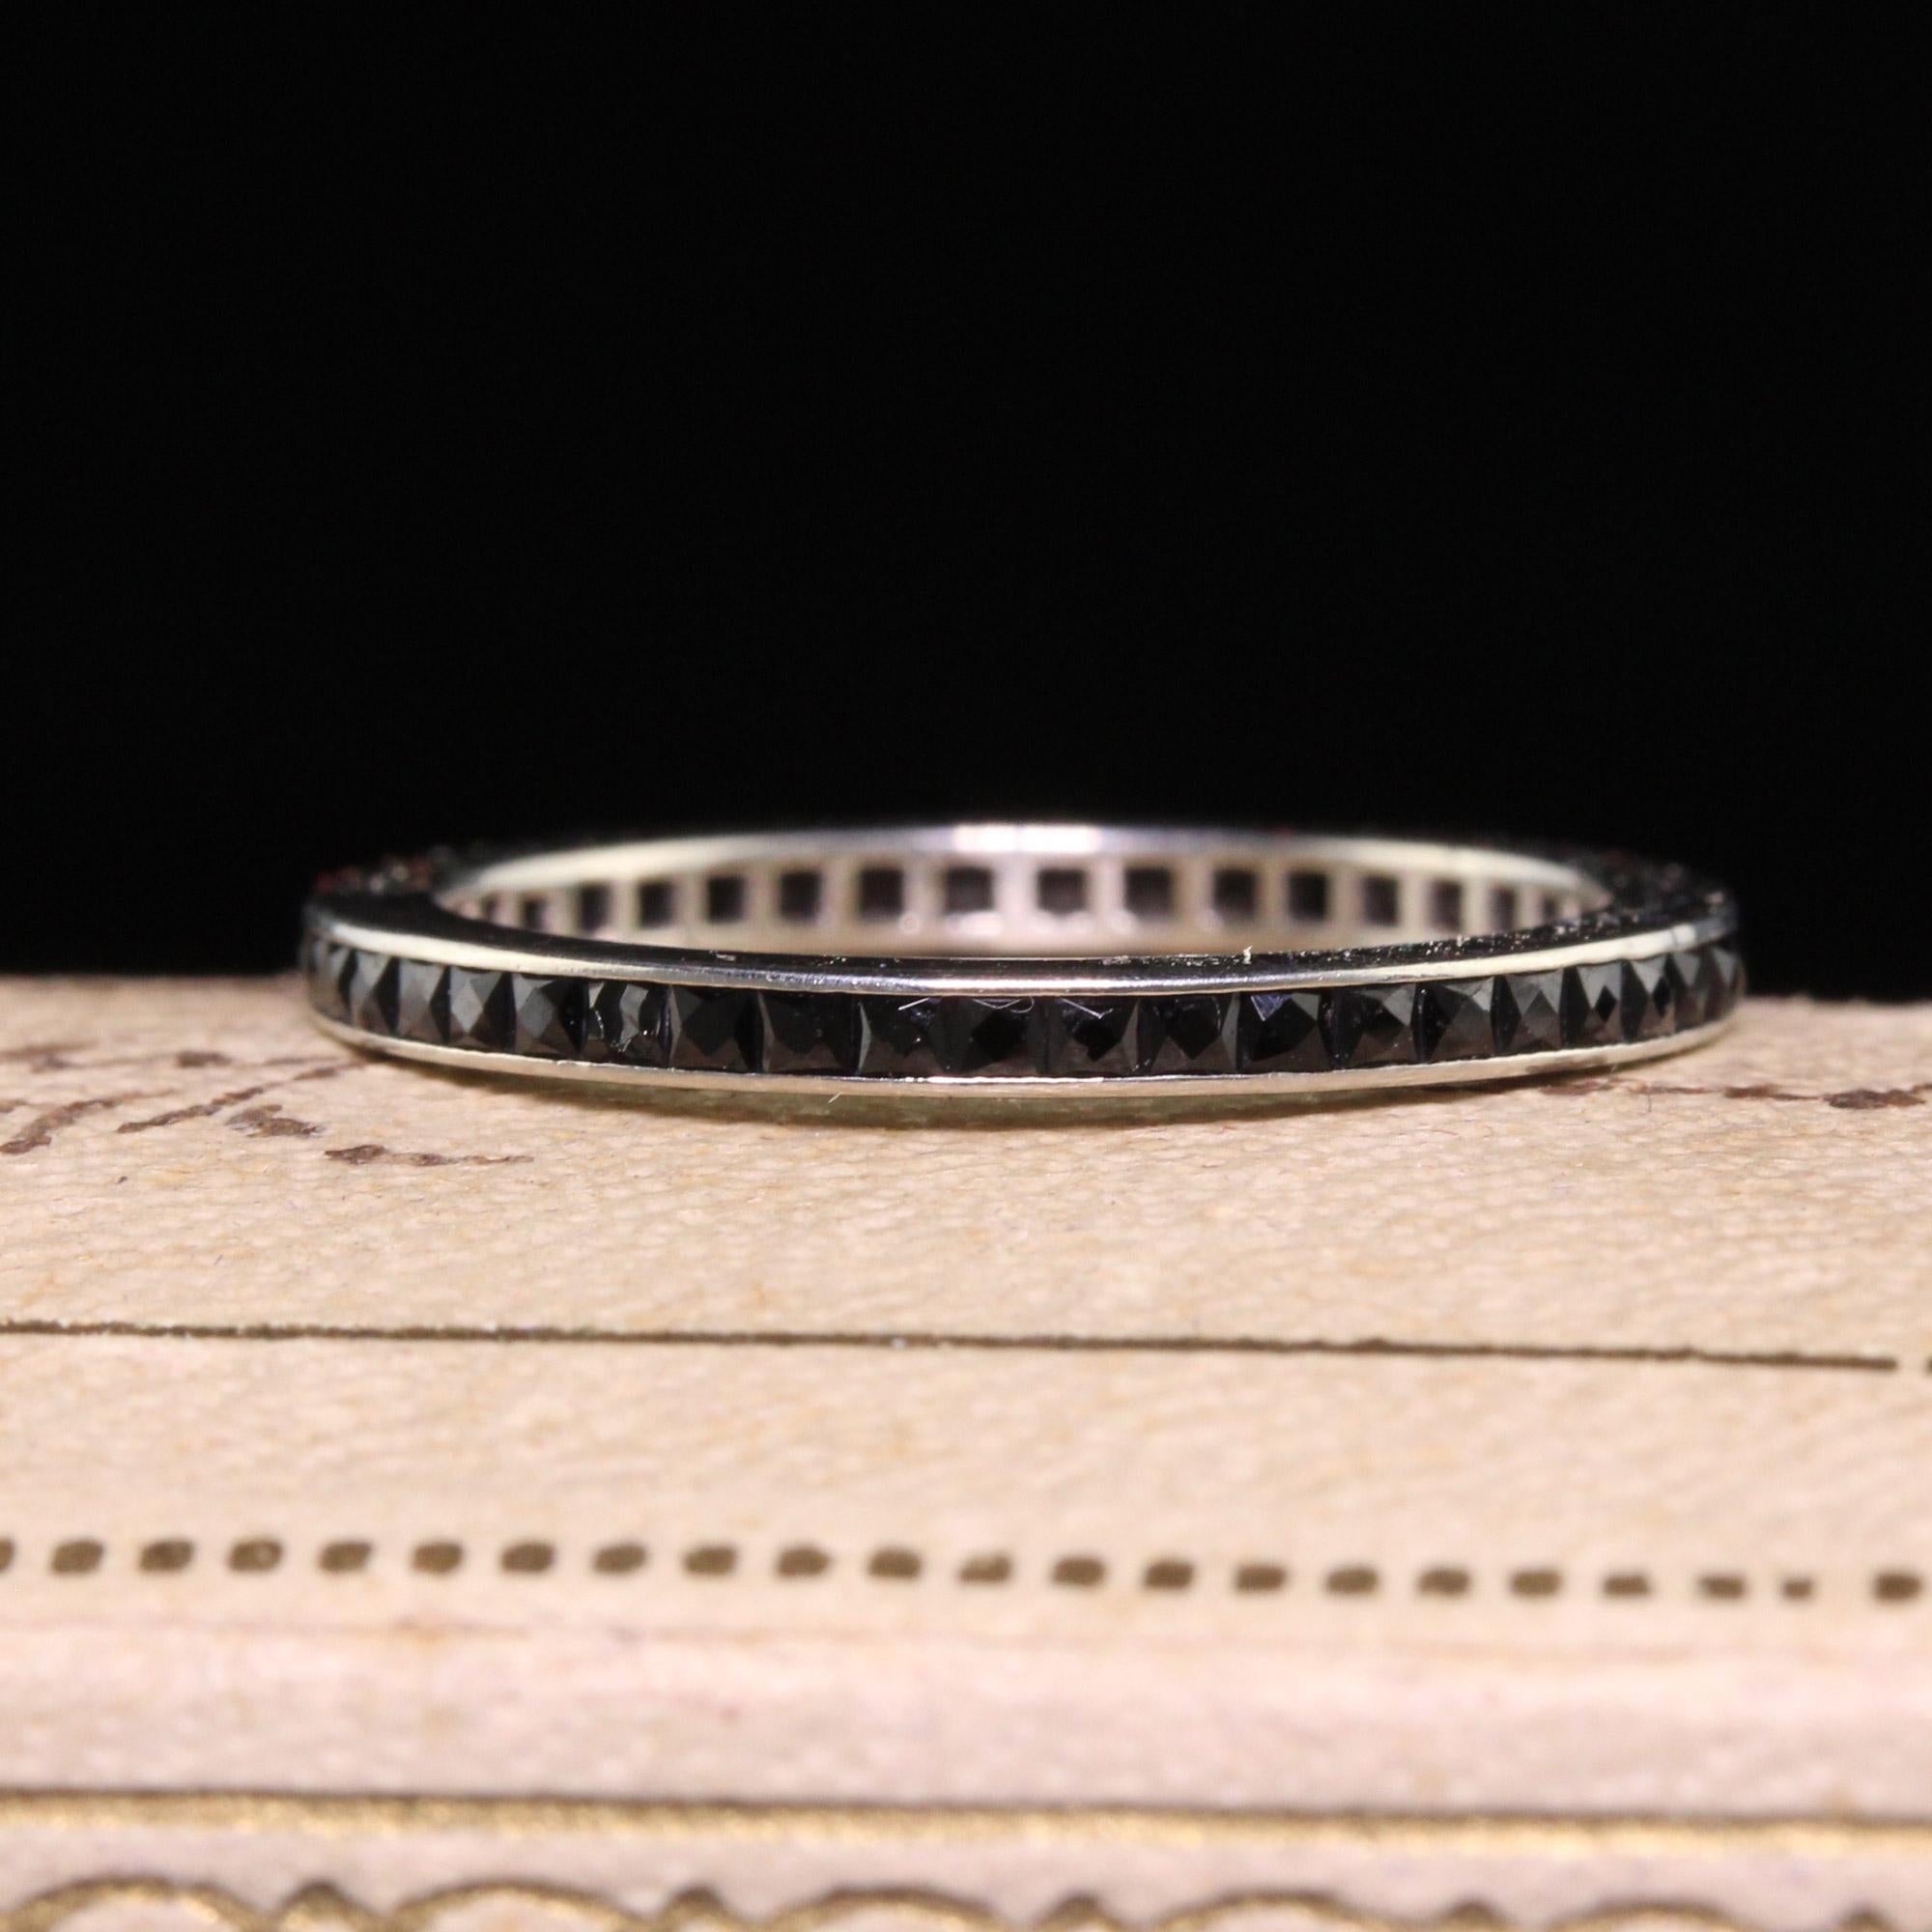 Schöne antike Art Deco 14K Weißgold Französisch Cut Onyx Eternity Band - Größe 5 1/2. Diese wunderschöne Ewigkeit Band ist in 14k Weißgold gefertigt. Der Ring hat französisch geschliffenen Onyx geht um den gesamten Ring und es ist in gutem Zustand.